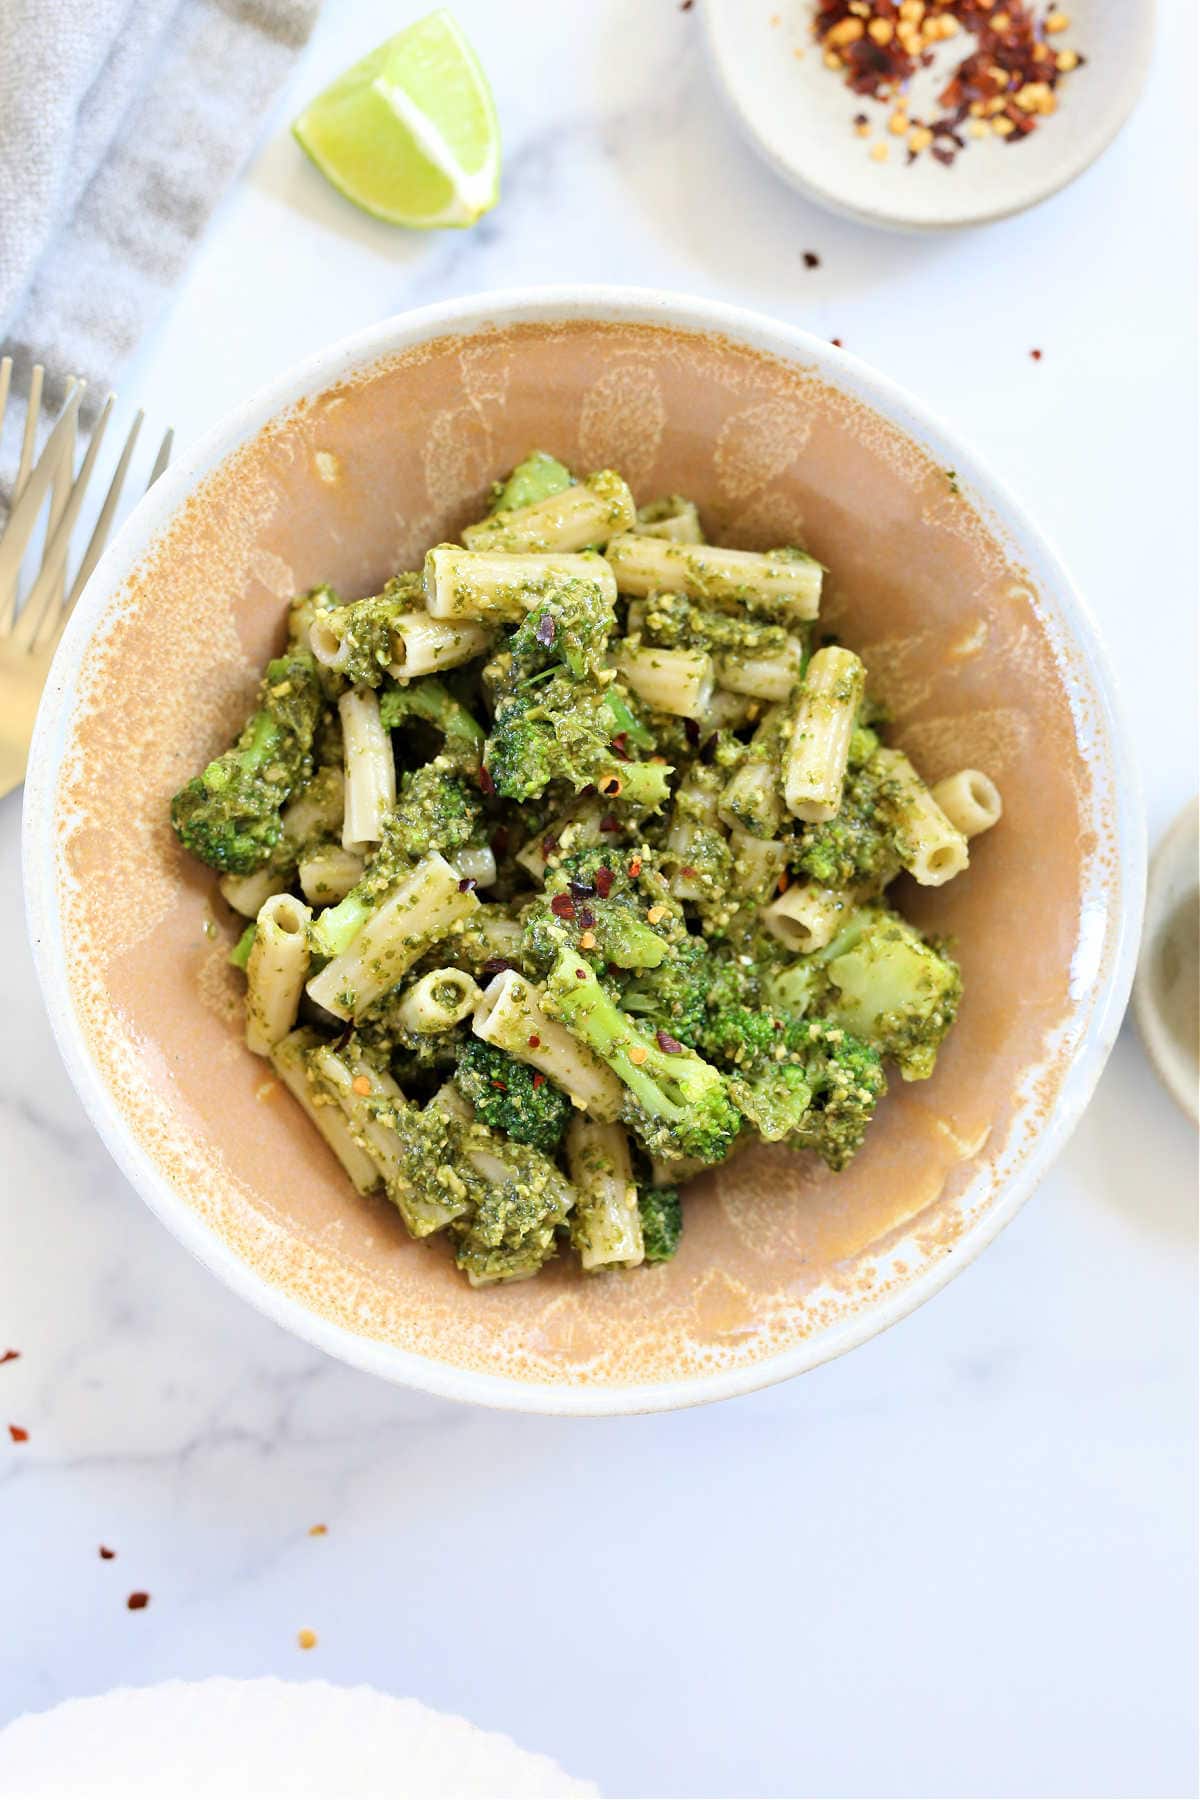 cilantro and basil pesto pasta with broccoli in a bowl